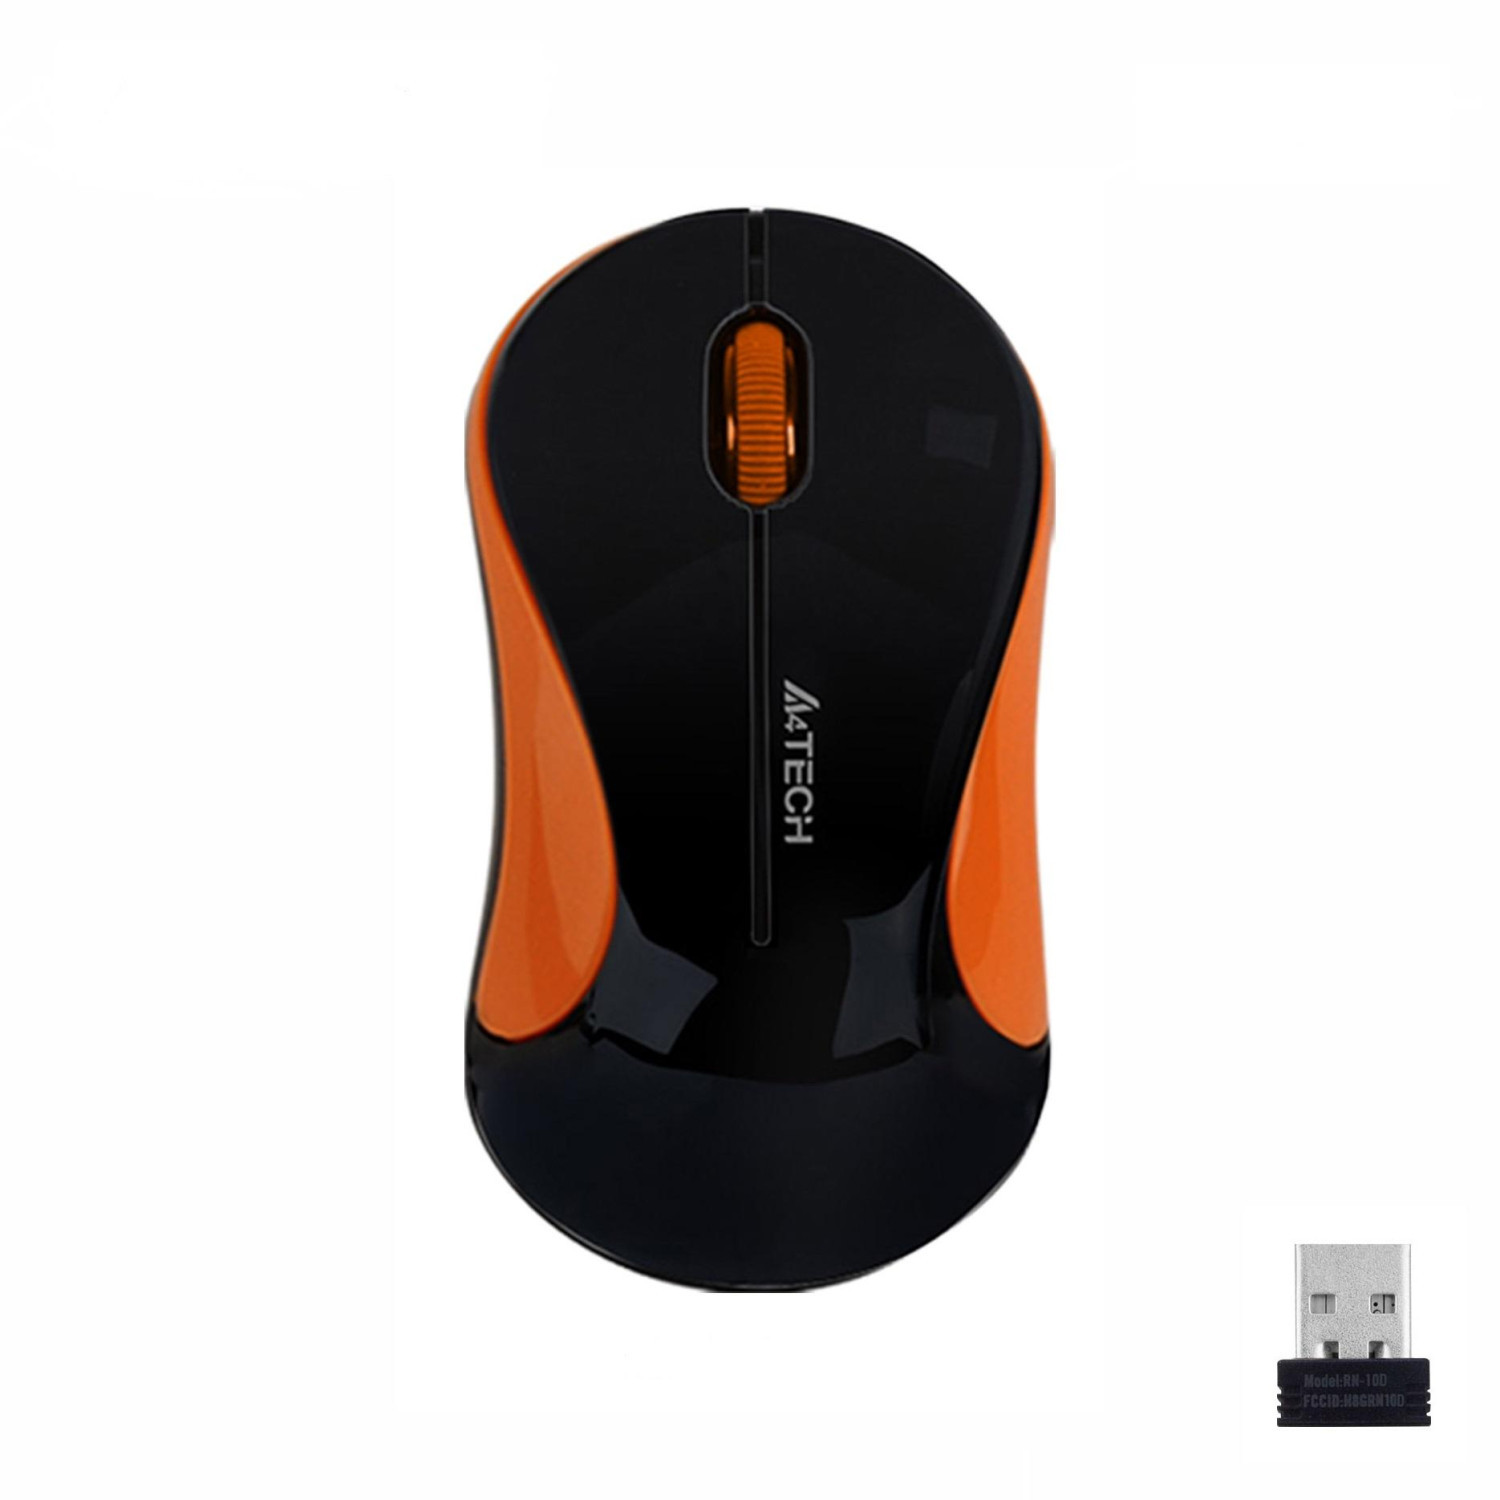 Оптична мишка A4tech G3-270N-3 V-Track, USB, Черен/Оранжев